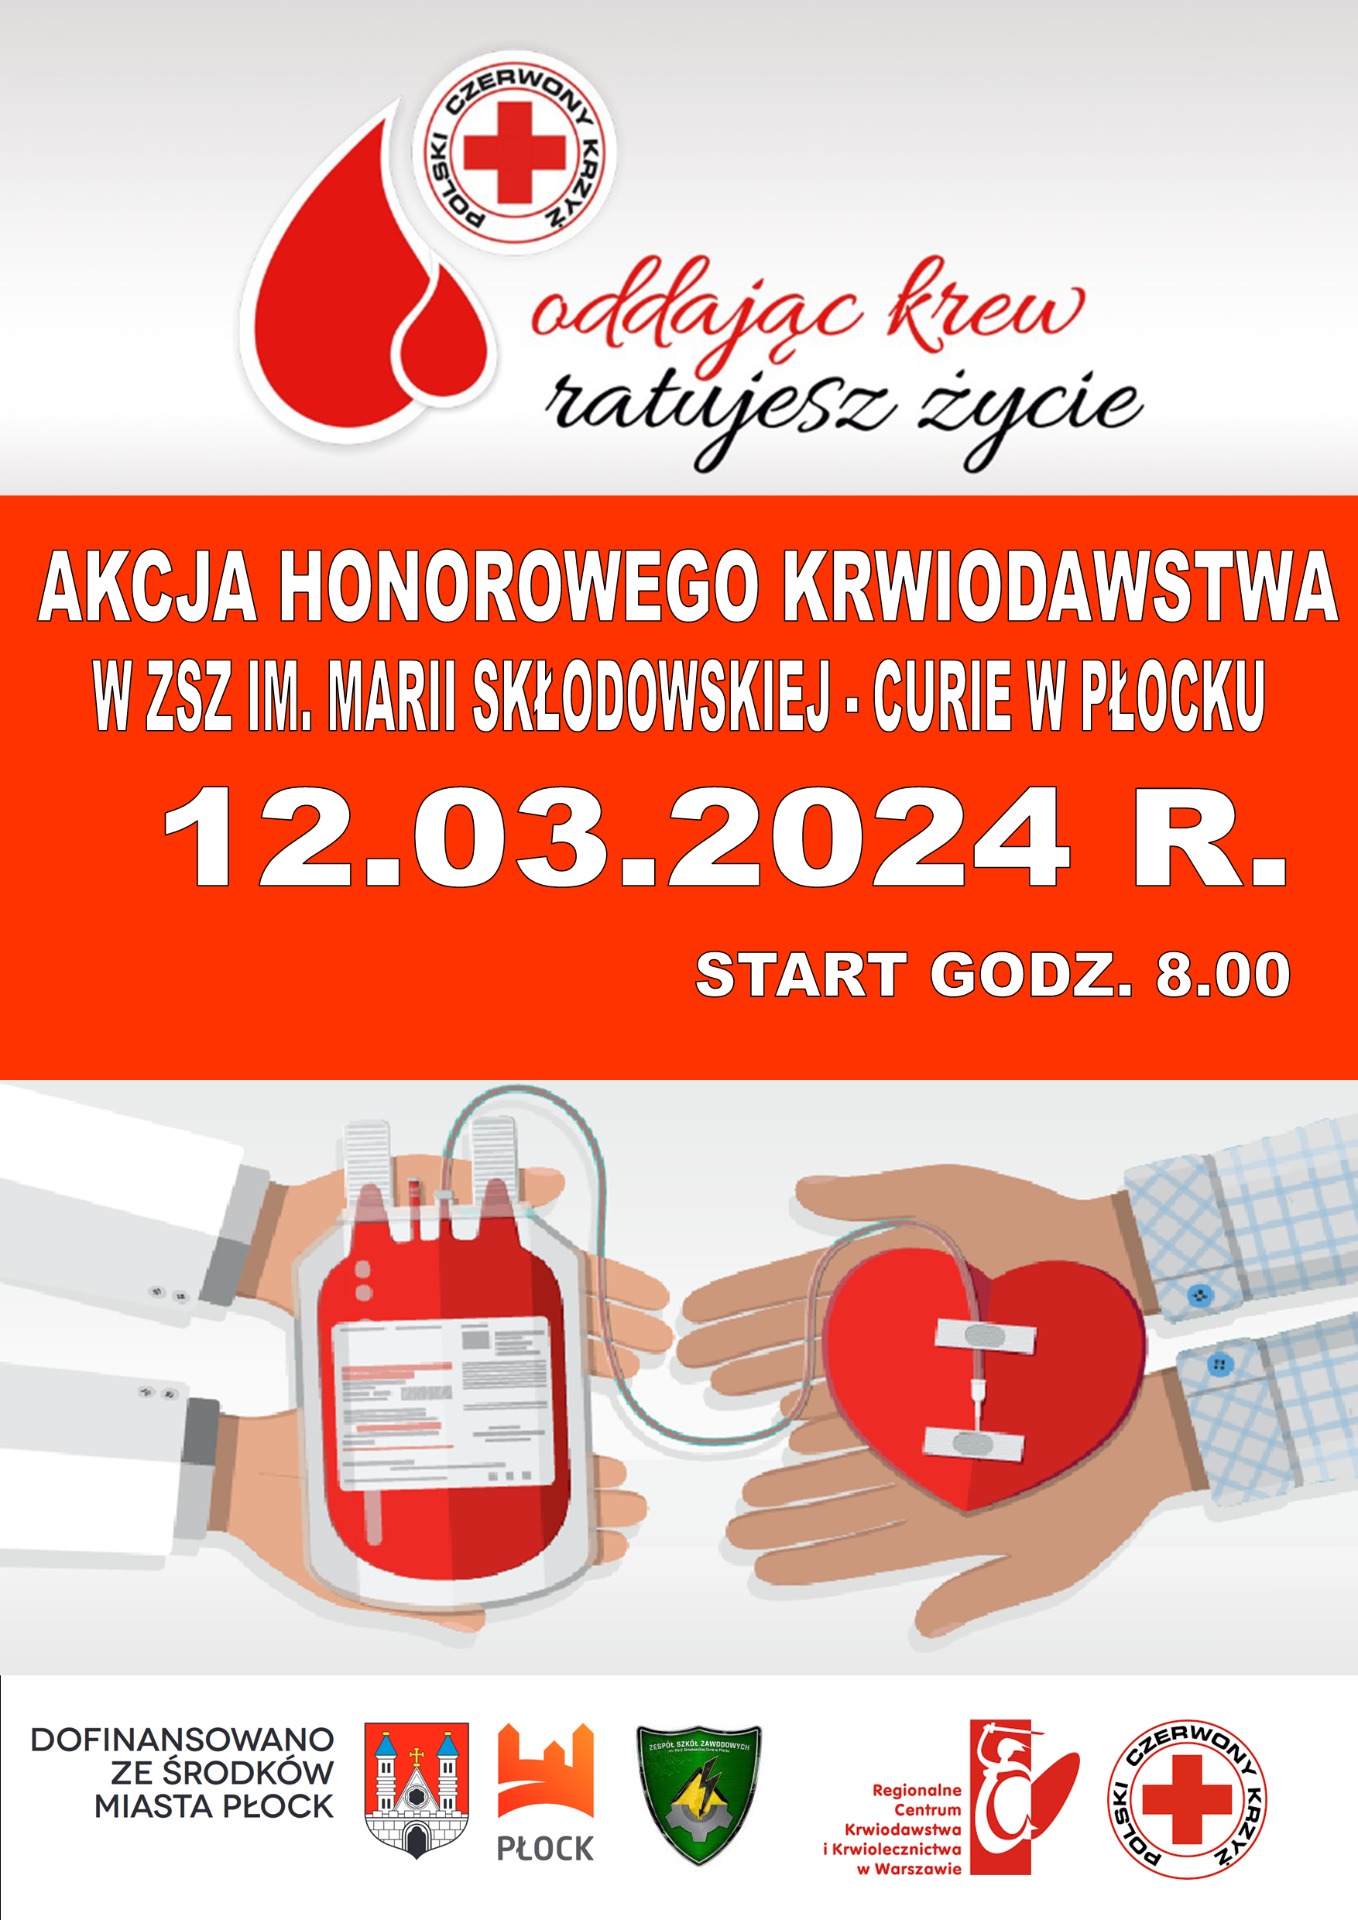 Plakat promujący akcję honorowego krwiodawstwa w „Elektryku”